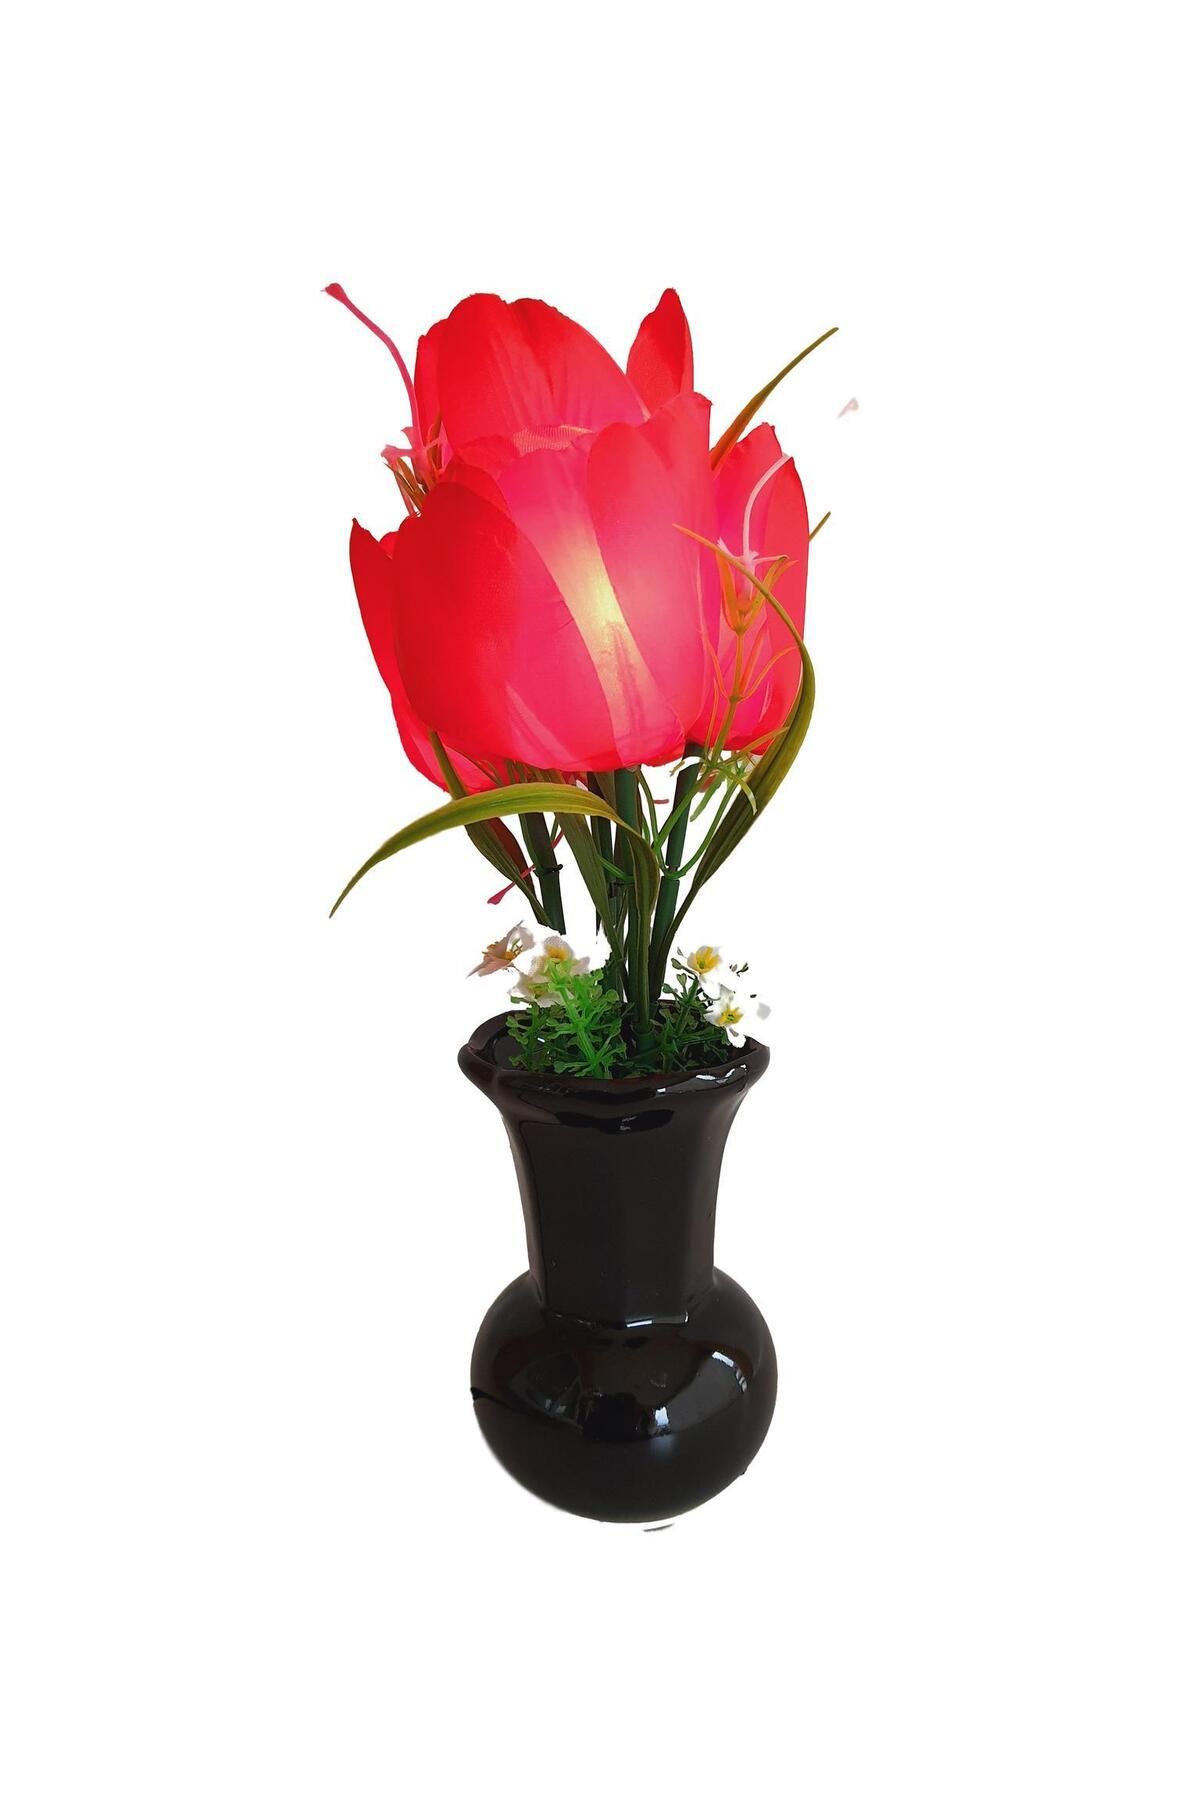 Hasyılmaz 90'lar Temalı Dekoratif Işıklı Yapay Çiçek 27cm (kırmızı Lale)